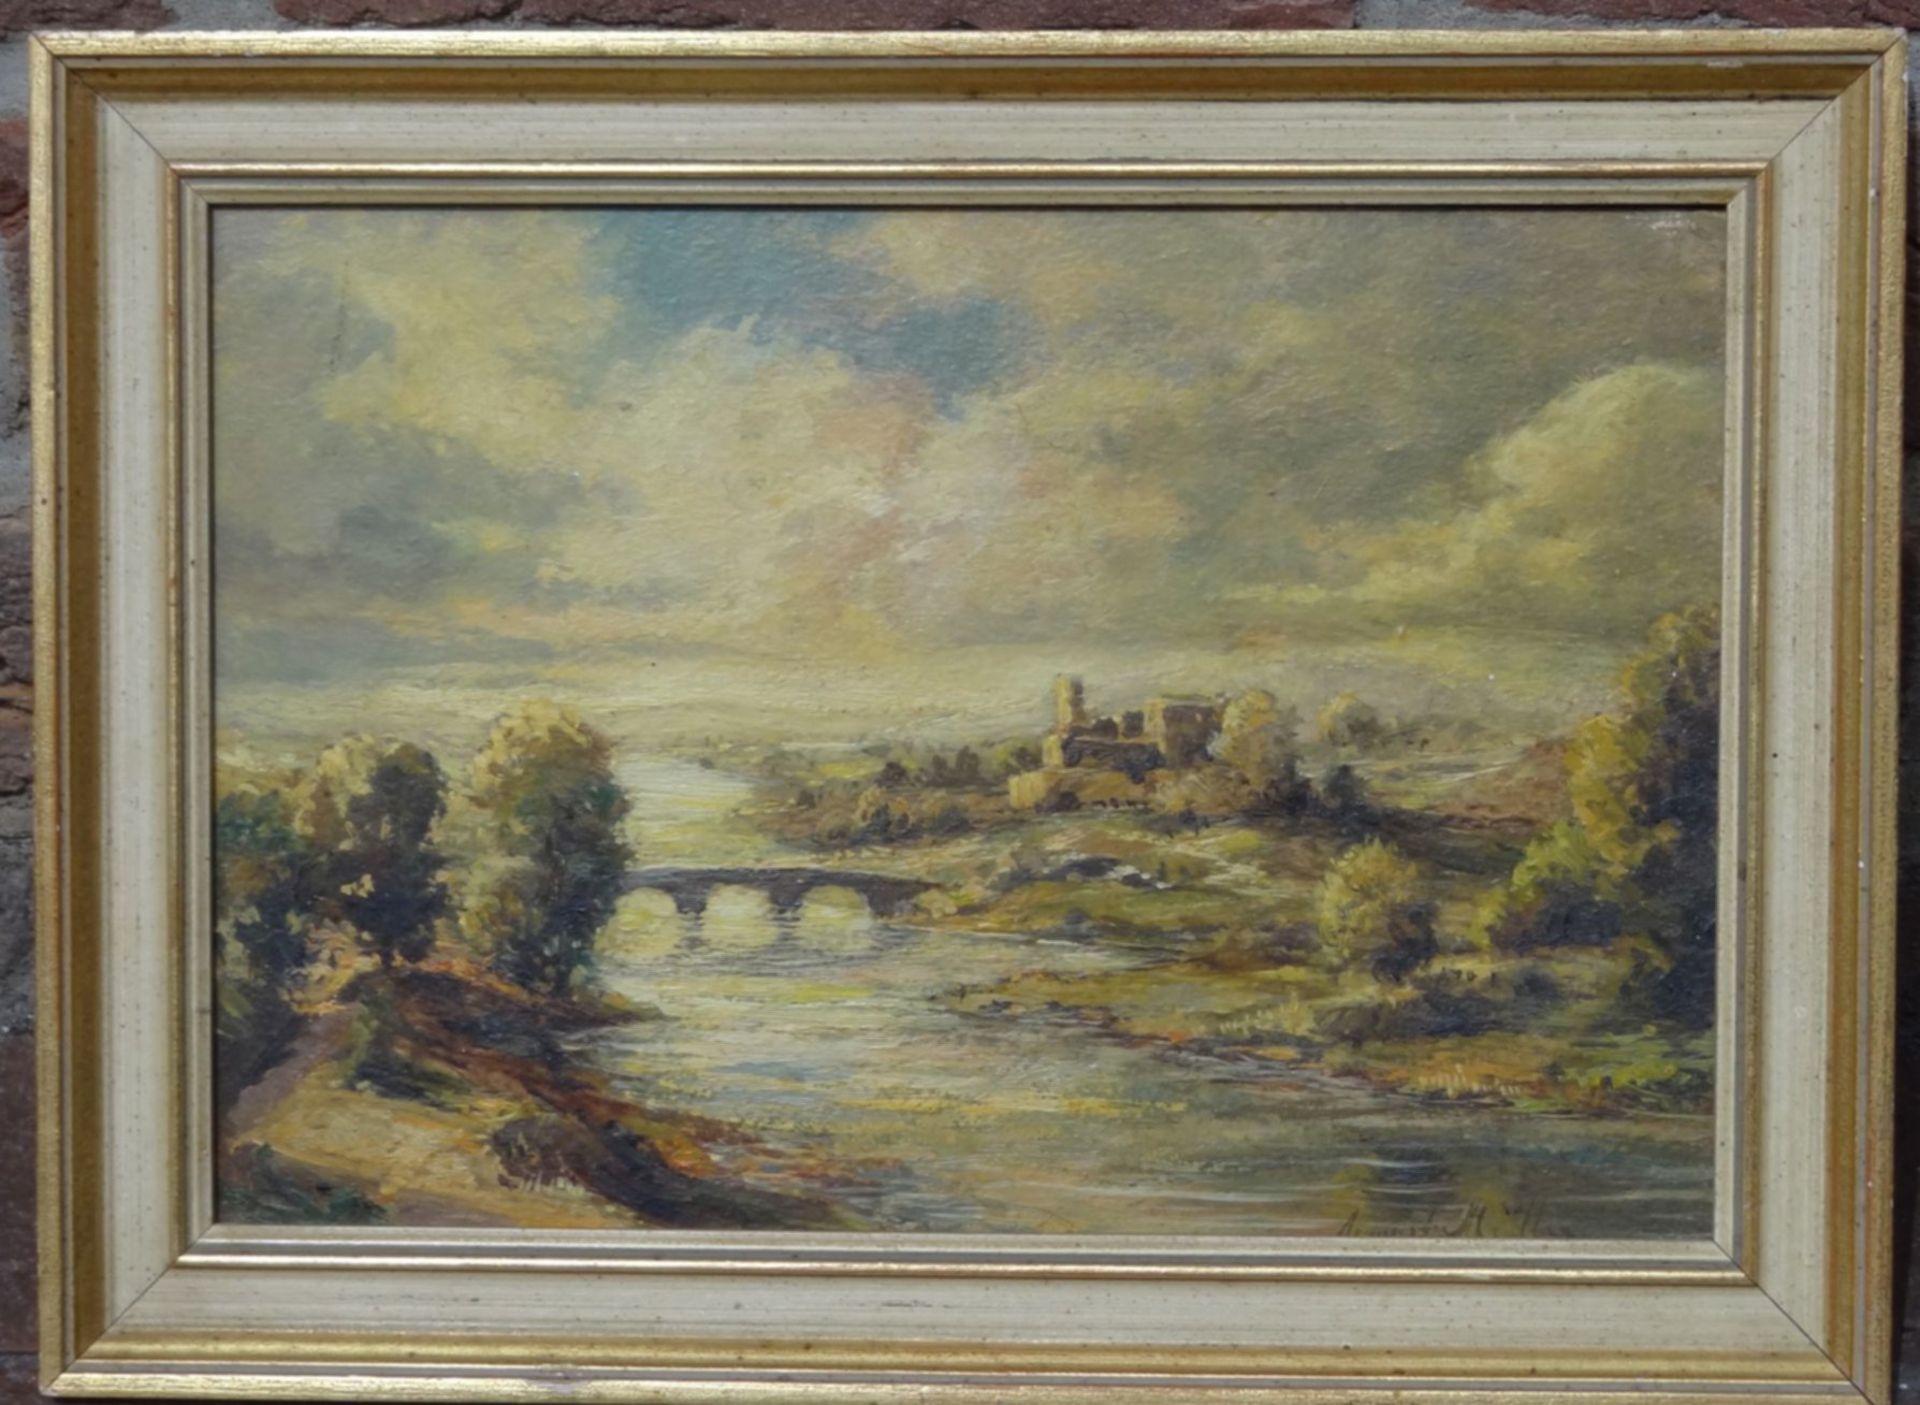 August MÜLLER (1836-1885) "Landschaft am Fluss" Öl/Platte, gerahmt, RG 25x35"""" - Bild 2 aus 4